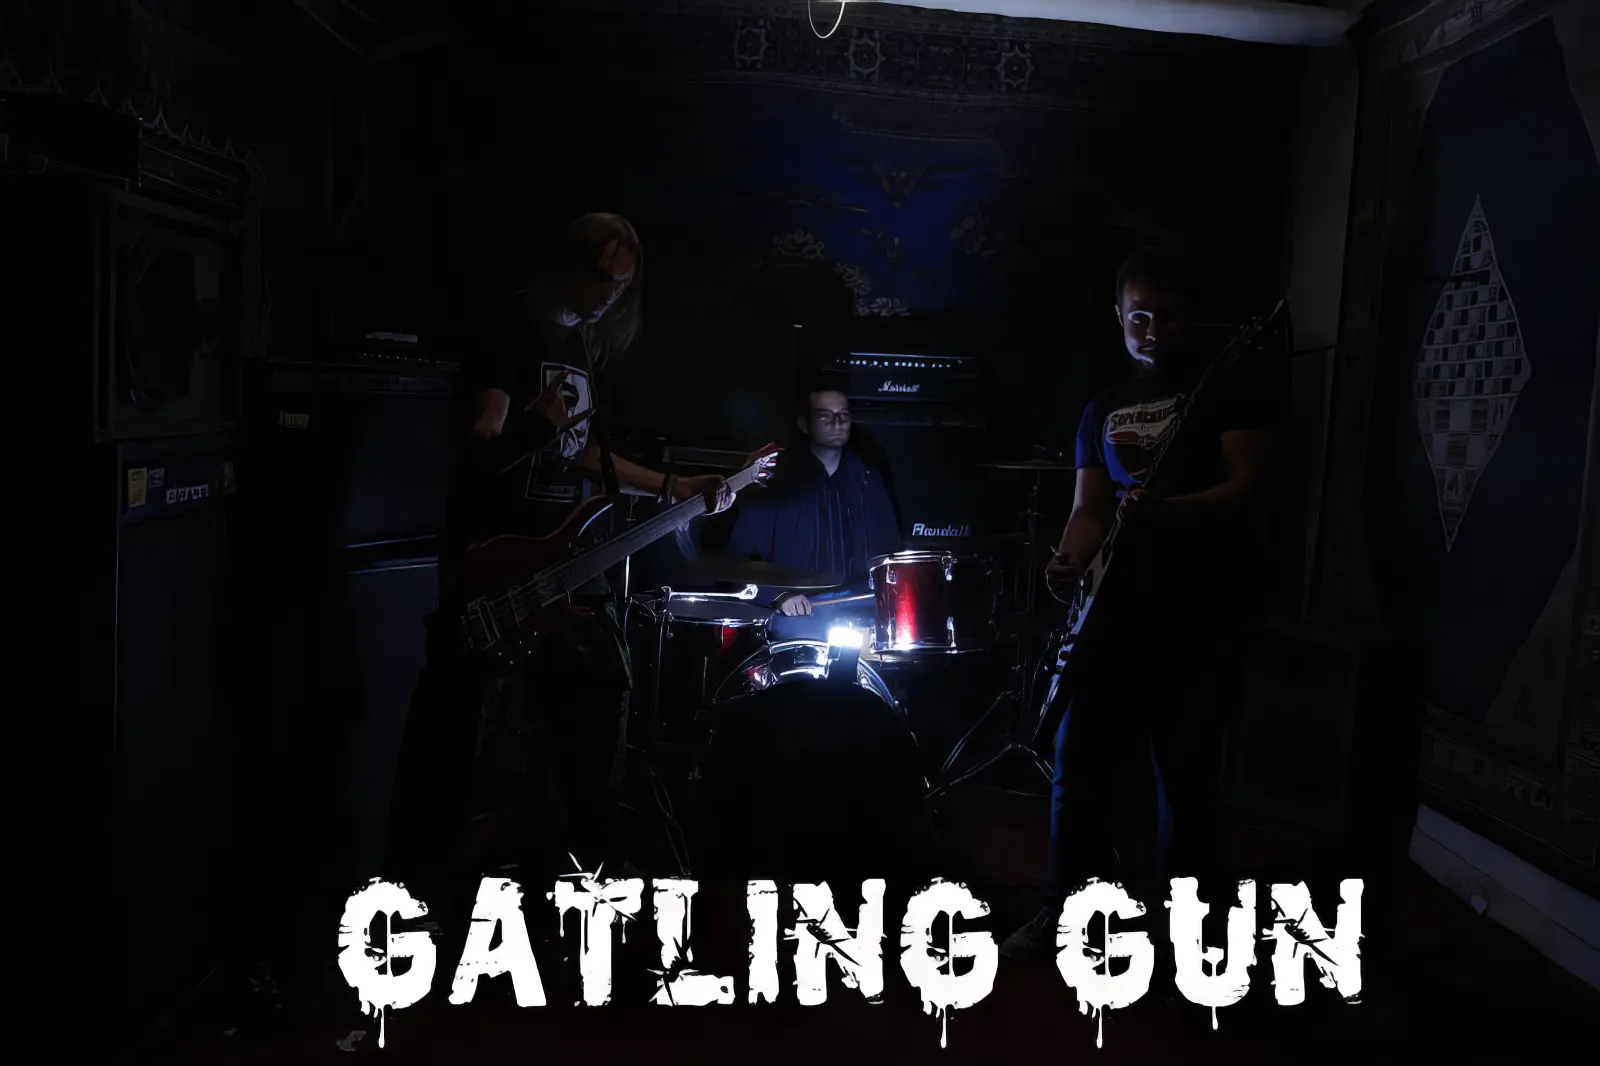 Gatling gun